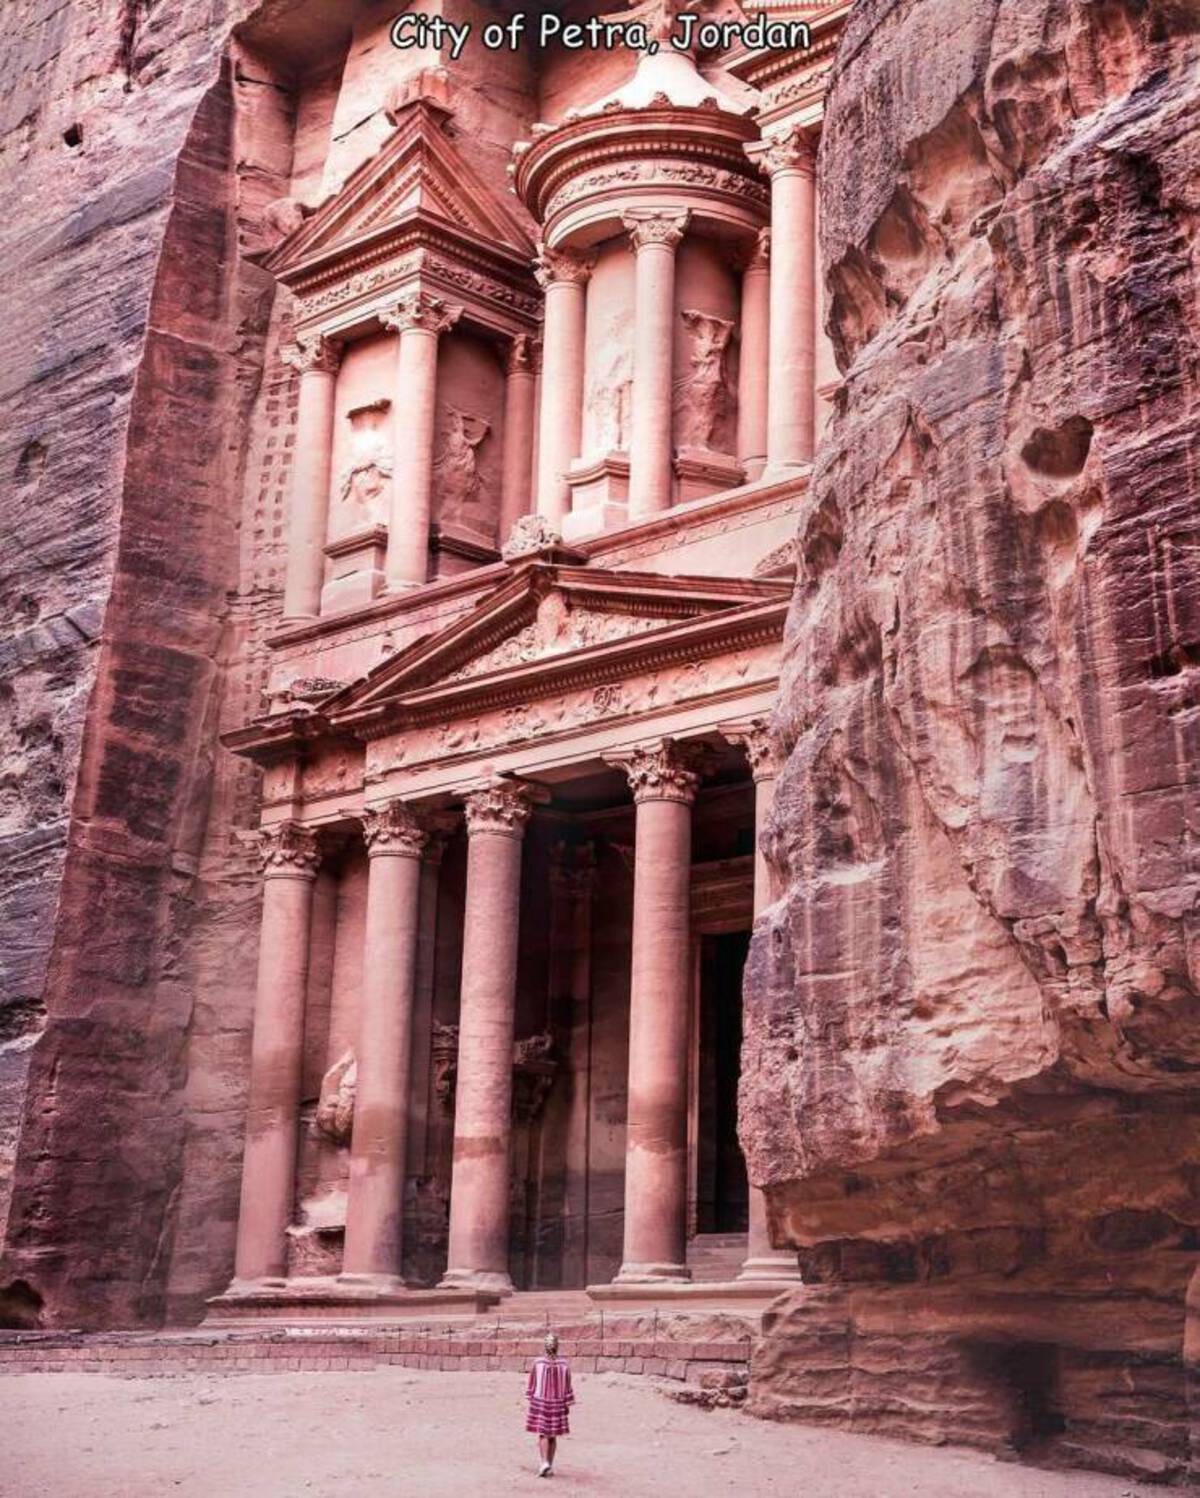 jordan city petra - City of Petra, Jordan